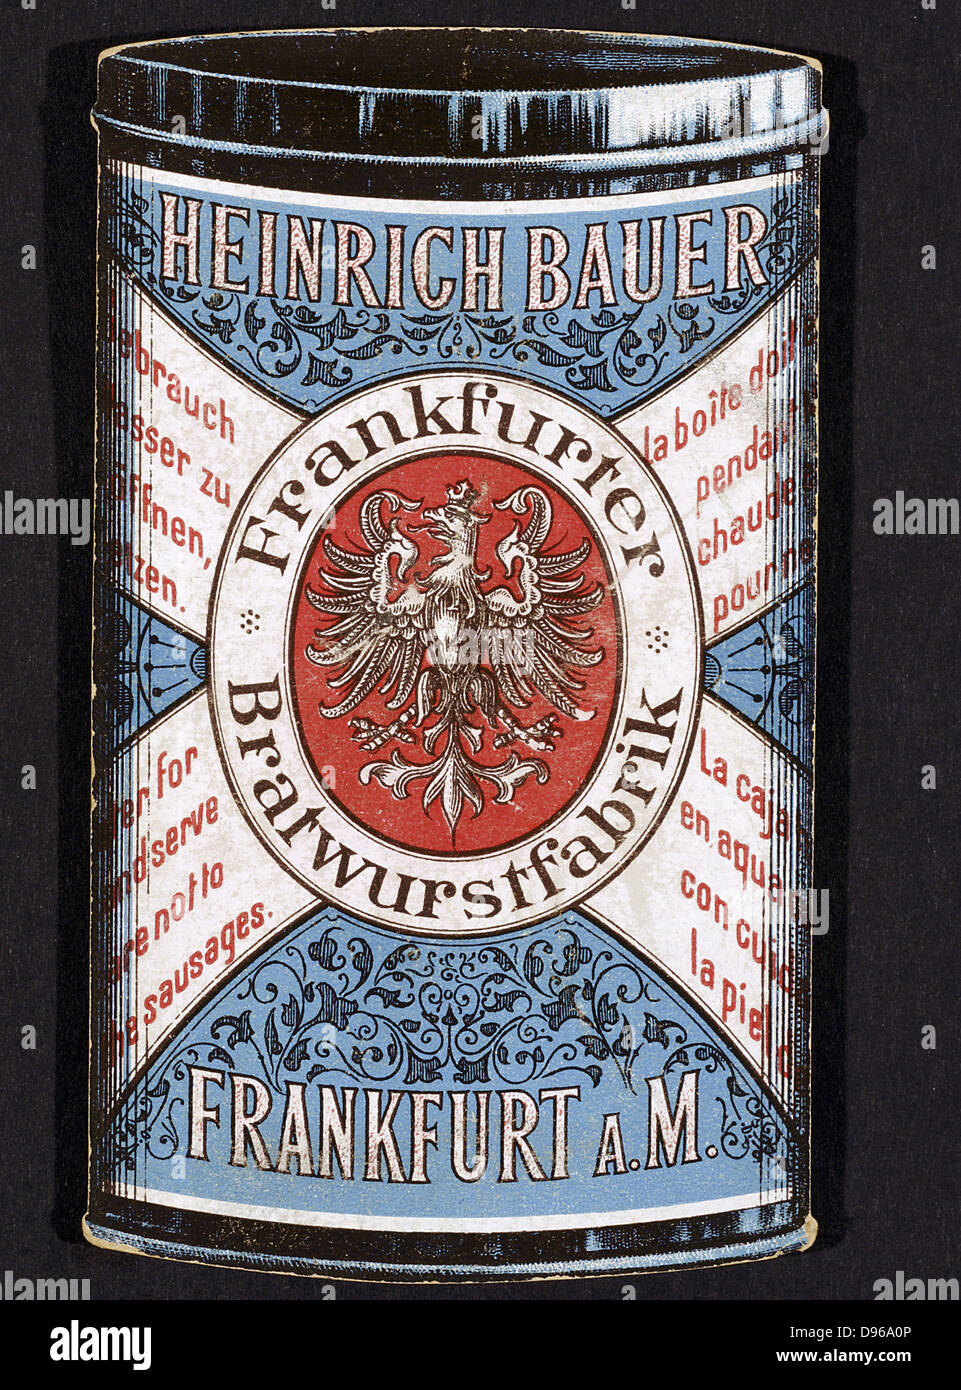 Complementare della scheda commerciale per le conserve di Wurstel prodotta da Heinrich Bauer di Frankfurt am Main. Germania, c1895. Foto Stock